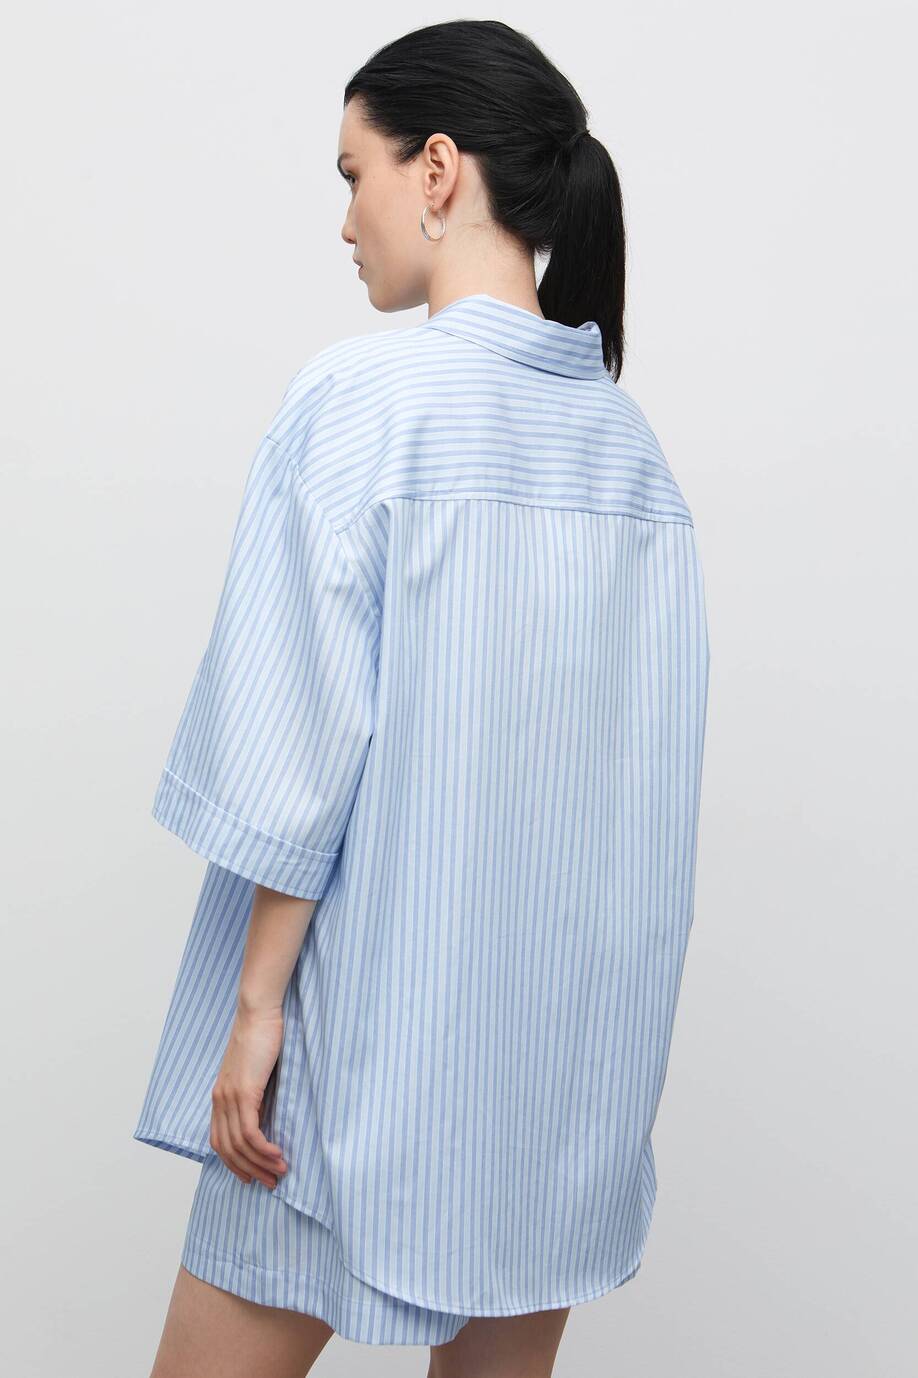 Pajama-style shirt